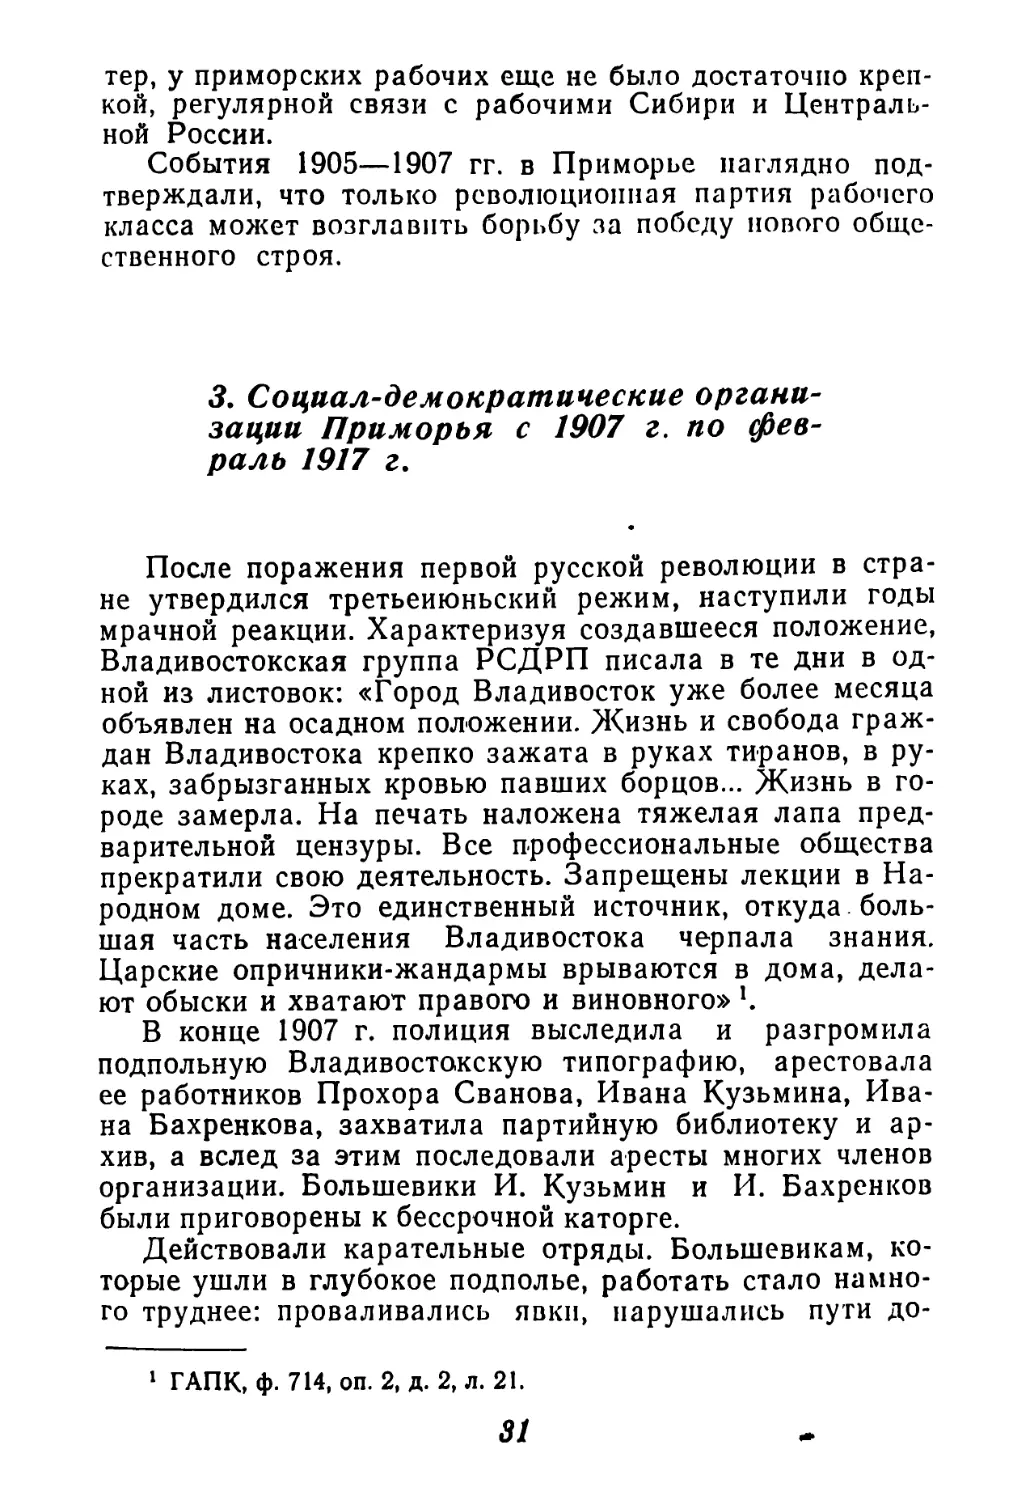 3. Социал-демократические организации Приморья с 1907 г. по февраль 1917 г.